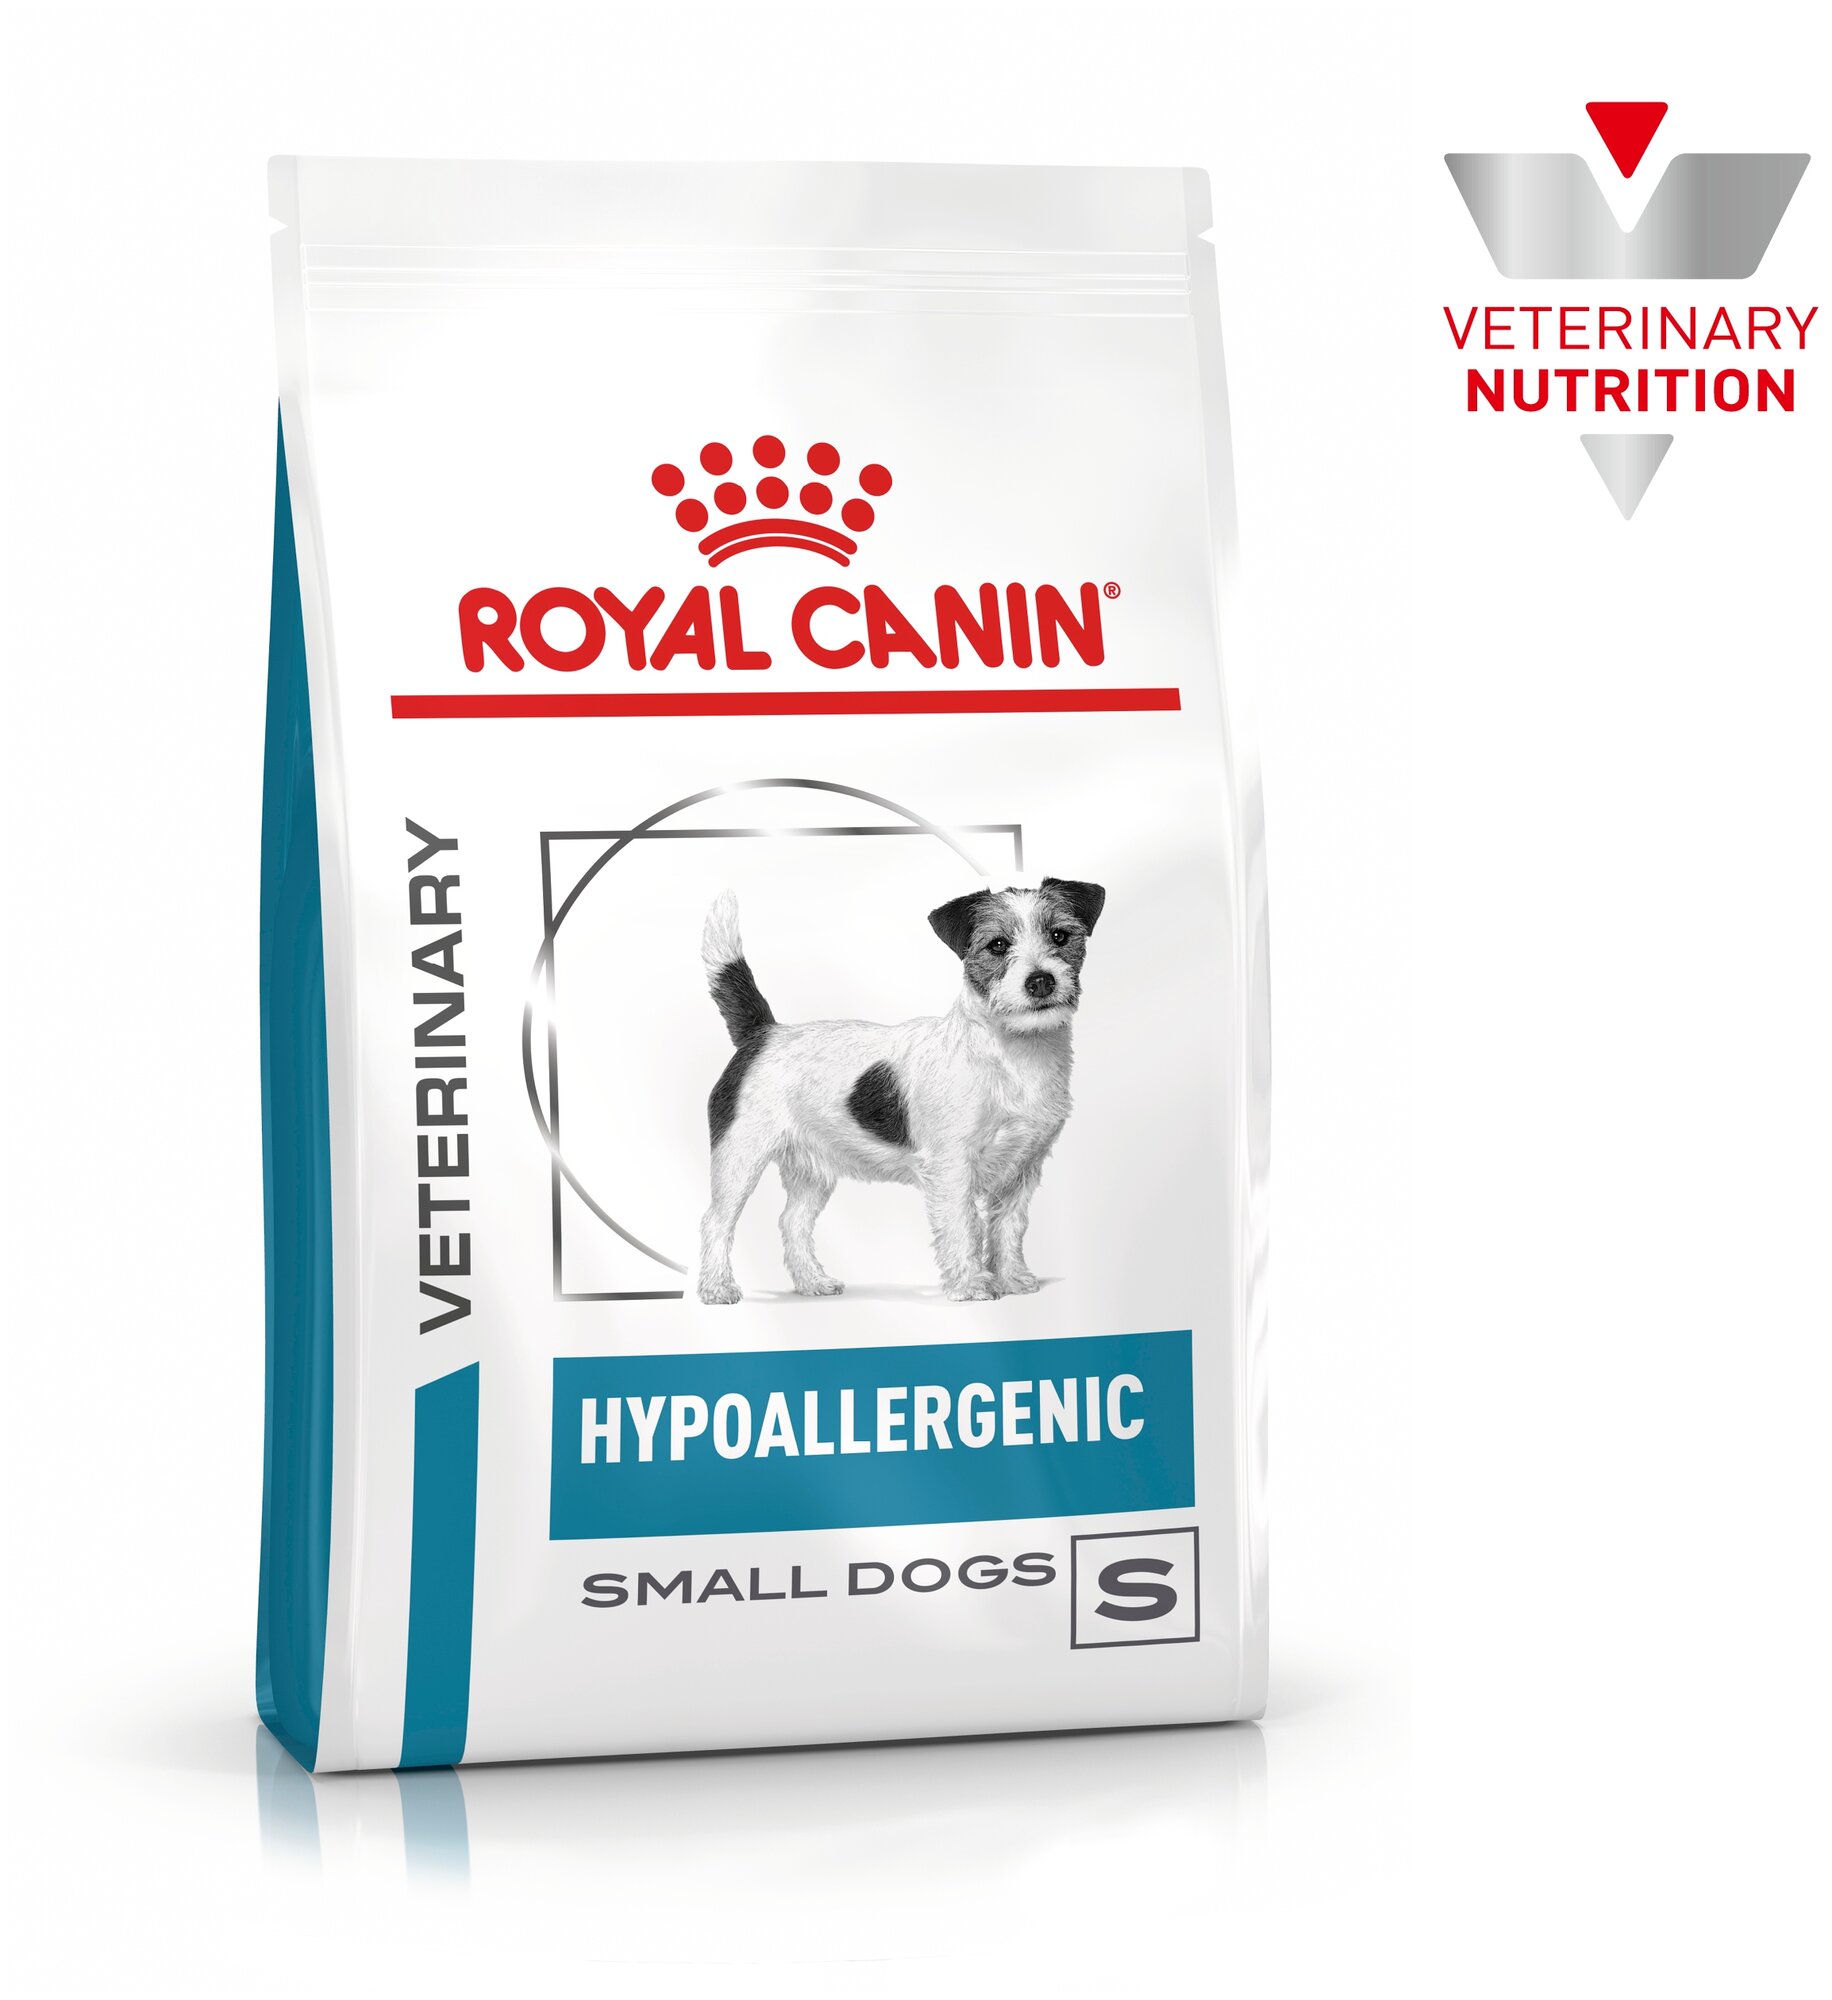 Royal Canin Hypoallergenic Small Dog корм для собак мелких пород при пищевой аллергии Диетический, 1 кг.